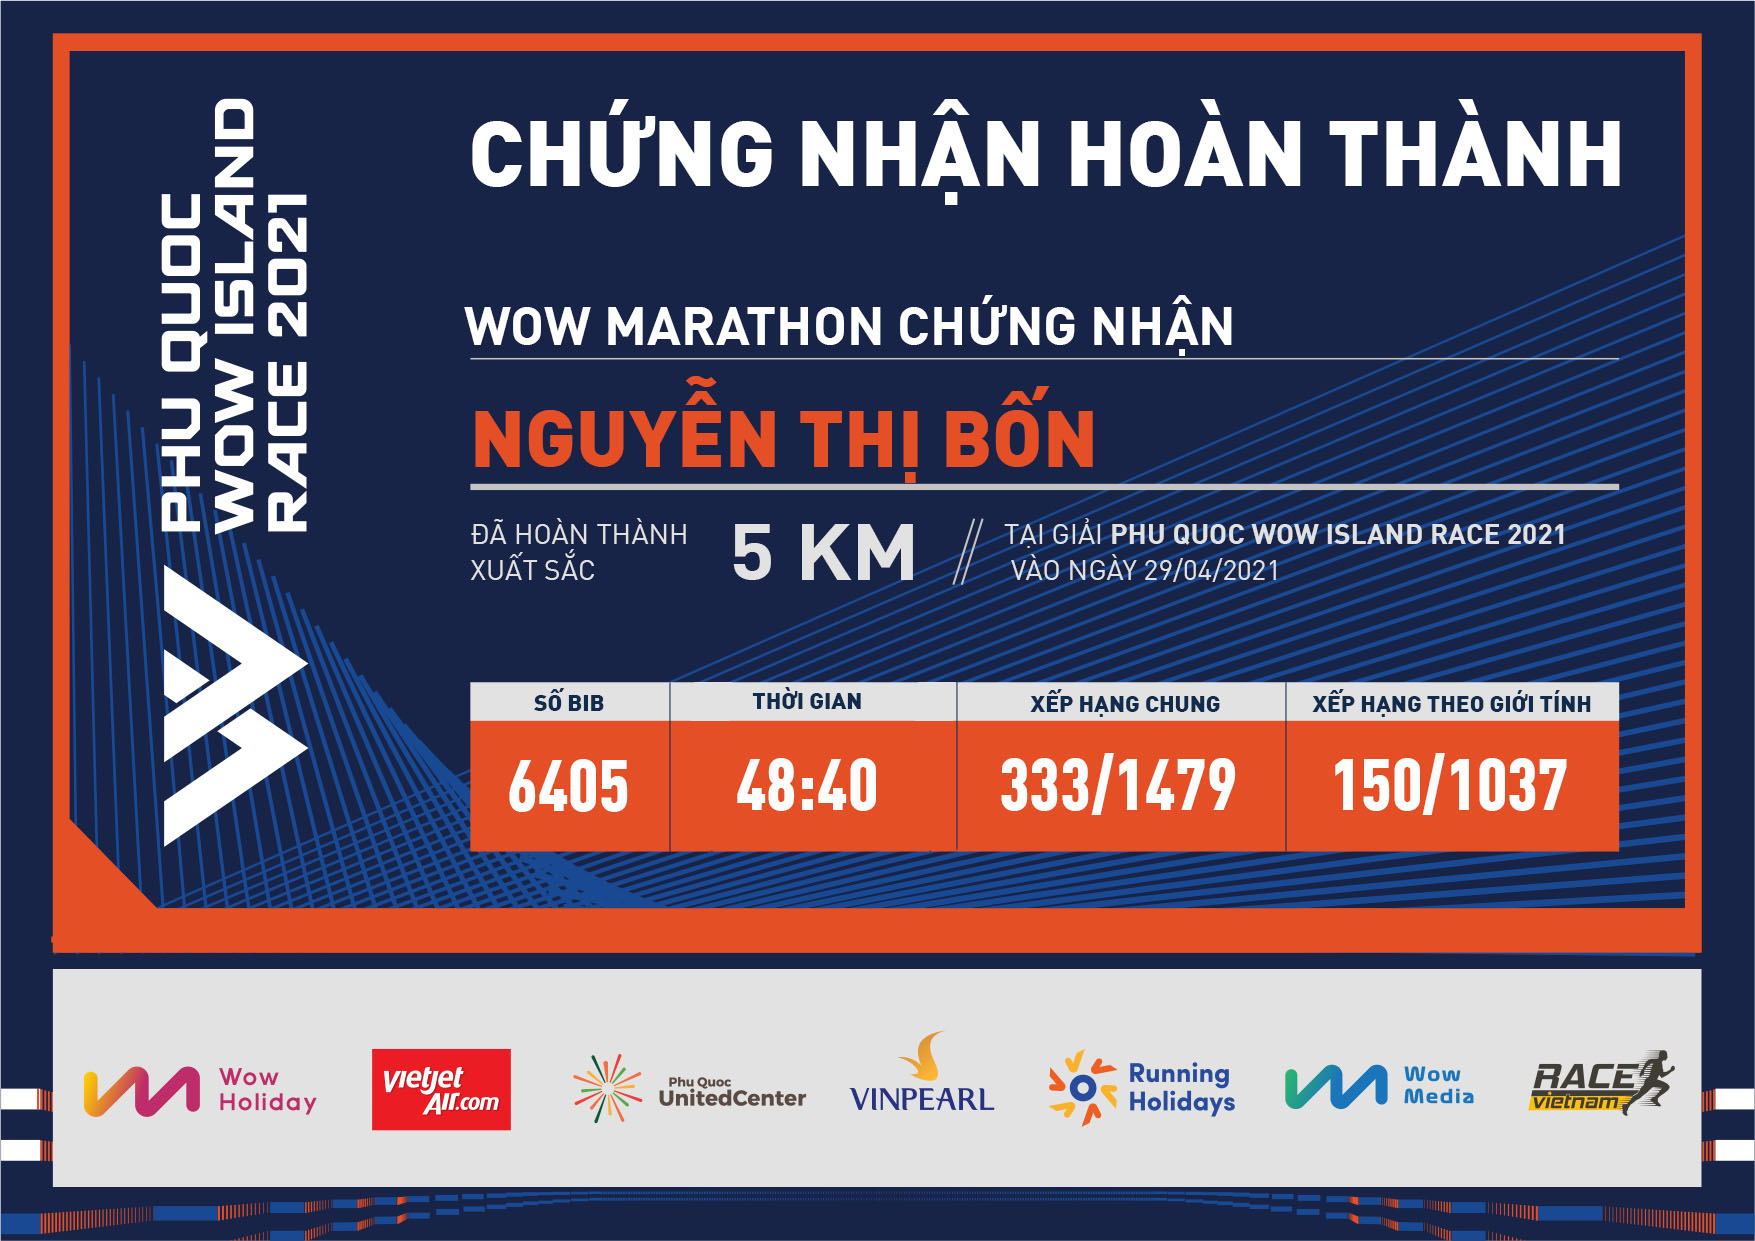 6405 - Nguyễn Thị Bốn